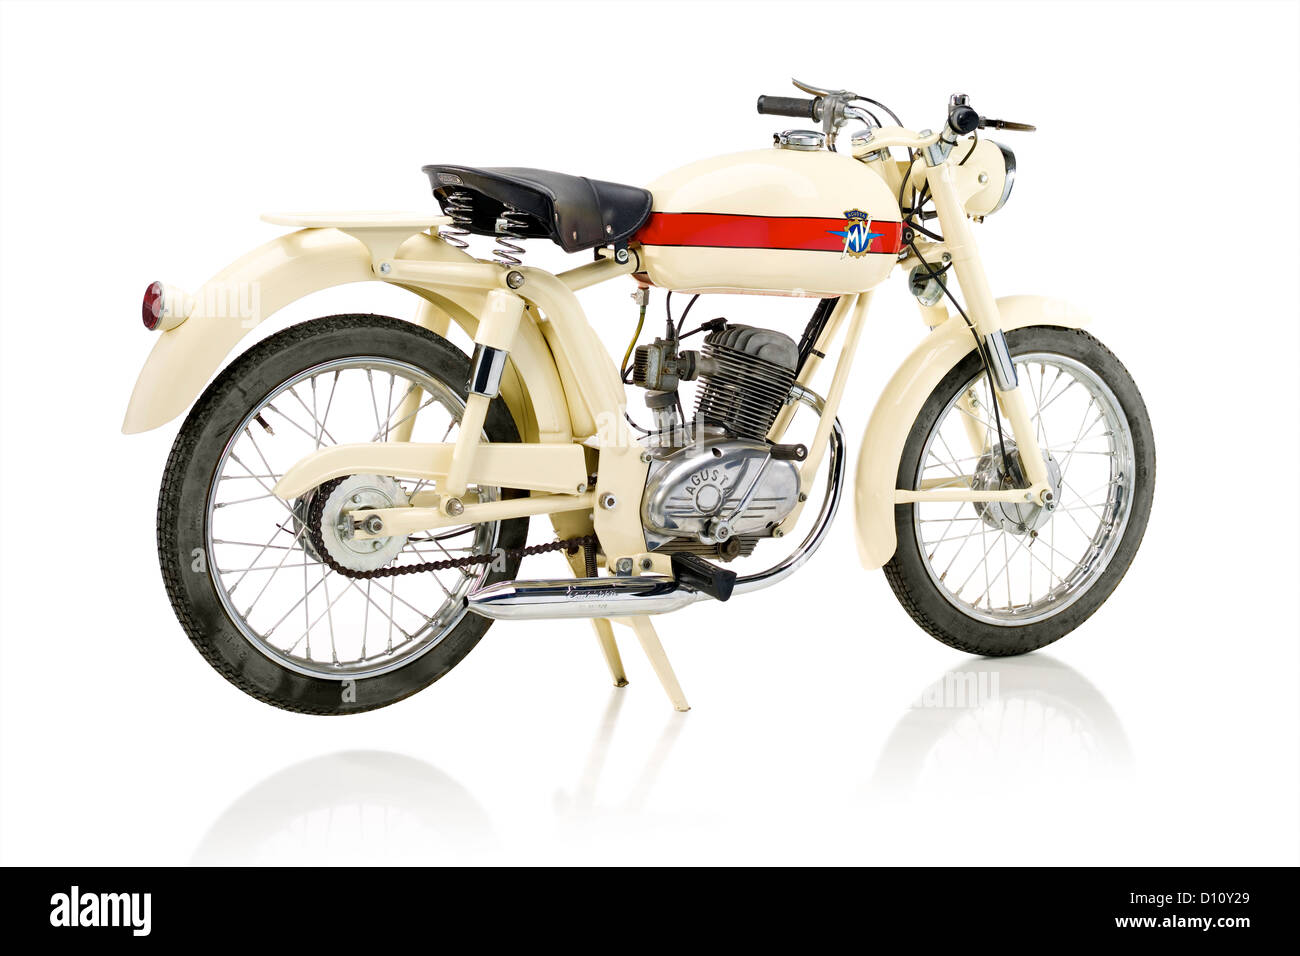 1966 MV Agusta Liberty Turismo motorcycle Stock Photo